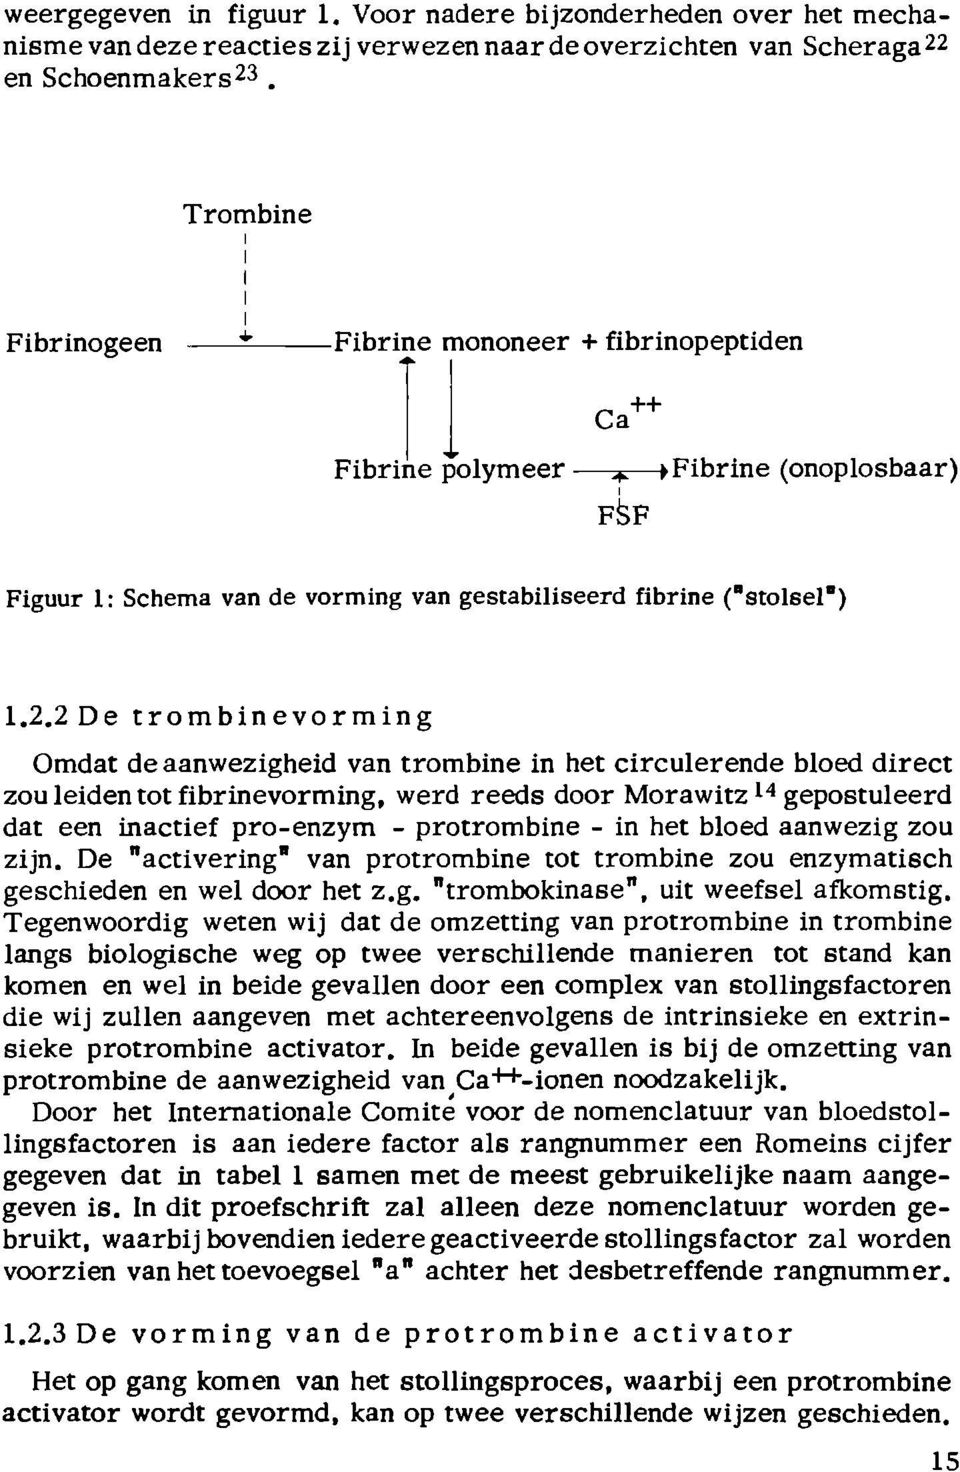 2De trombinevorming Omdat de aanwezigheid van trombine in het circulerende bloed direct zou leiden tot fibrinevorming, werd reeds door Morawitz 14 gepostuleerd dat een inactief pro-enzym -